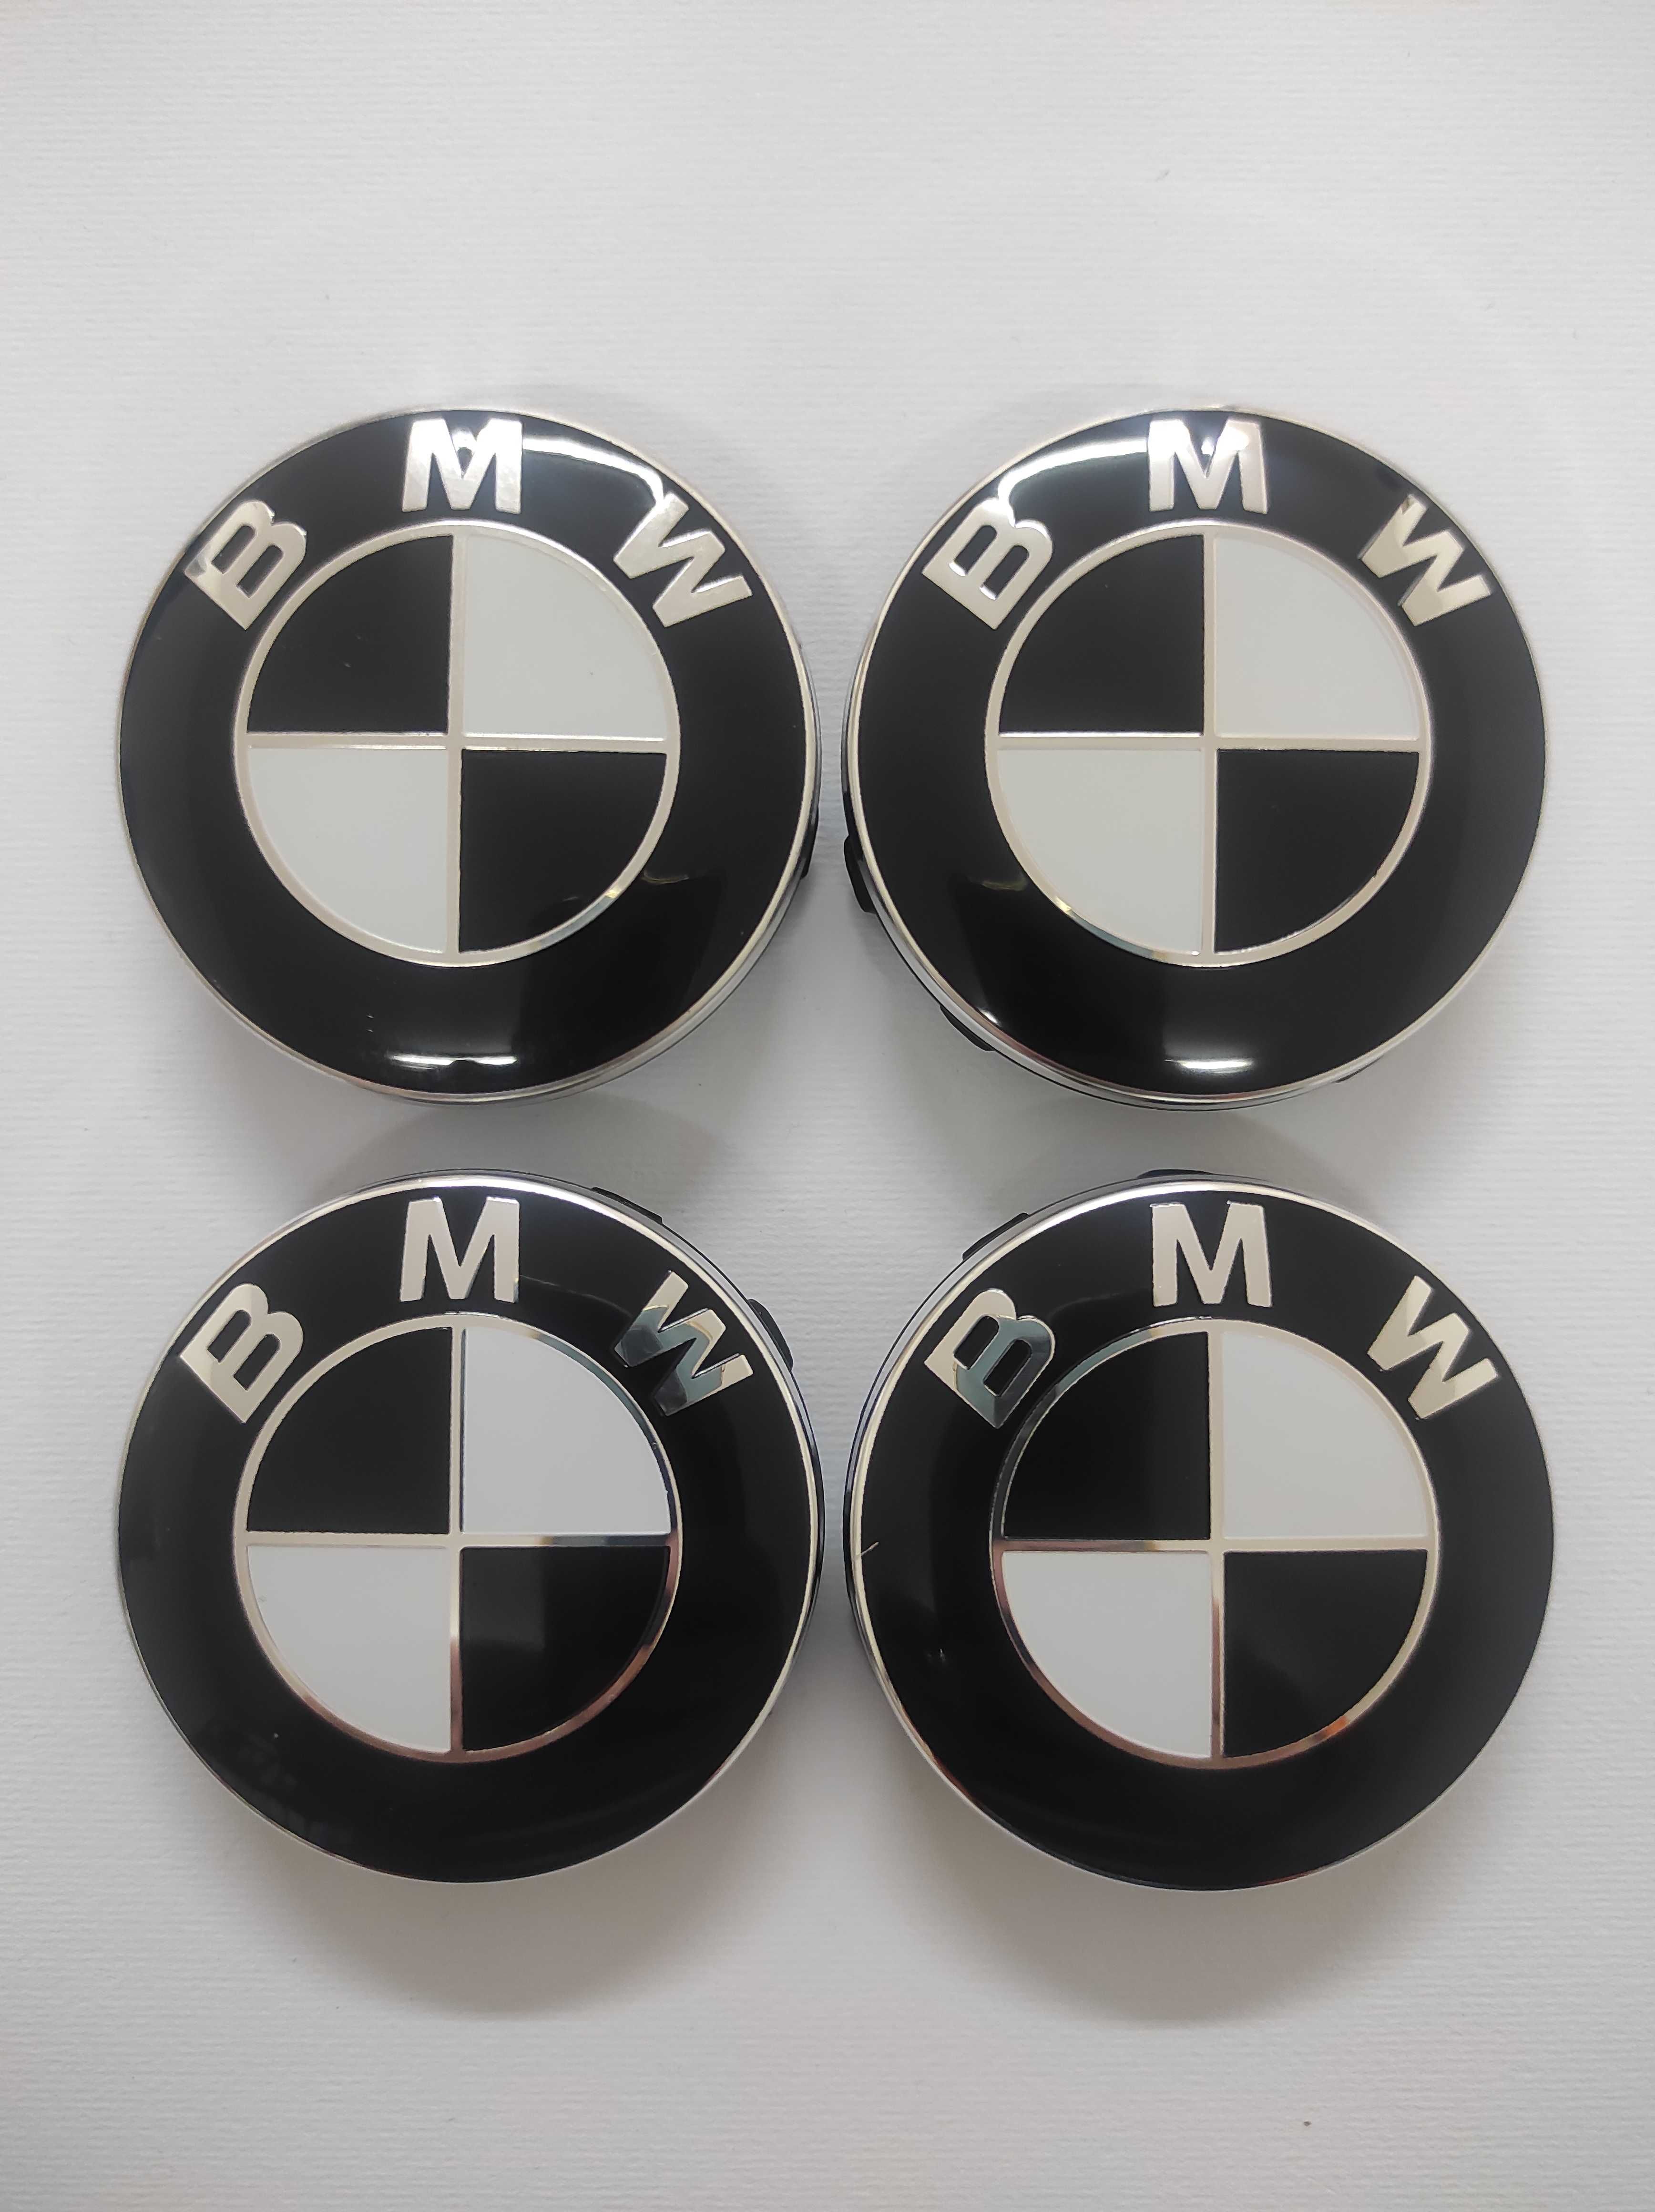 Капачки за Джанти за BMW 56, 60 и 68 мм. Цвят: Синьо/Бяло и Черно/Бяло